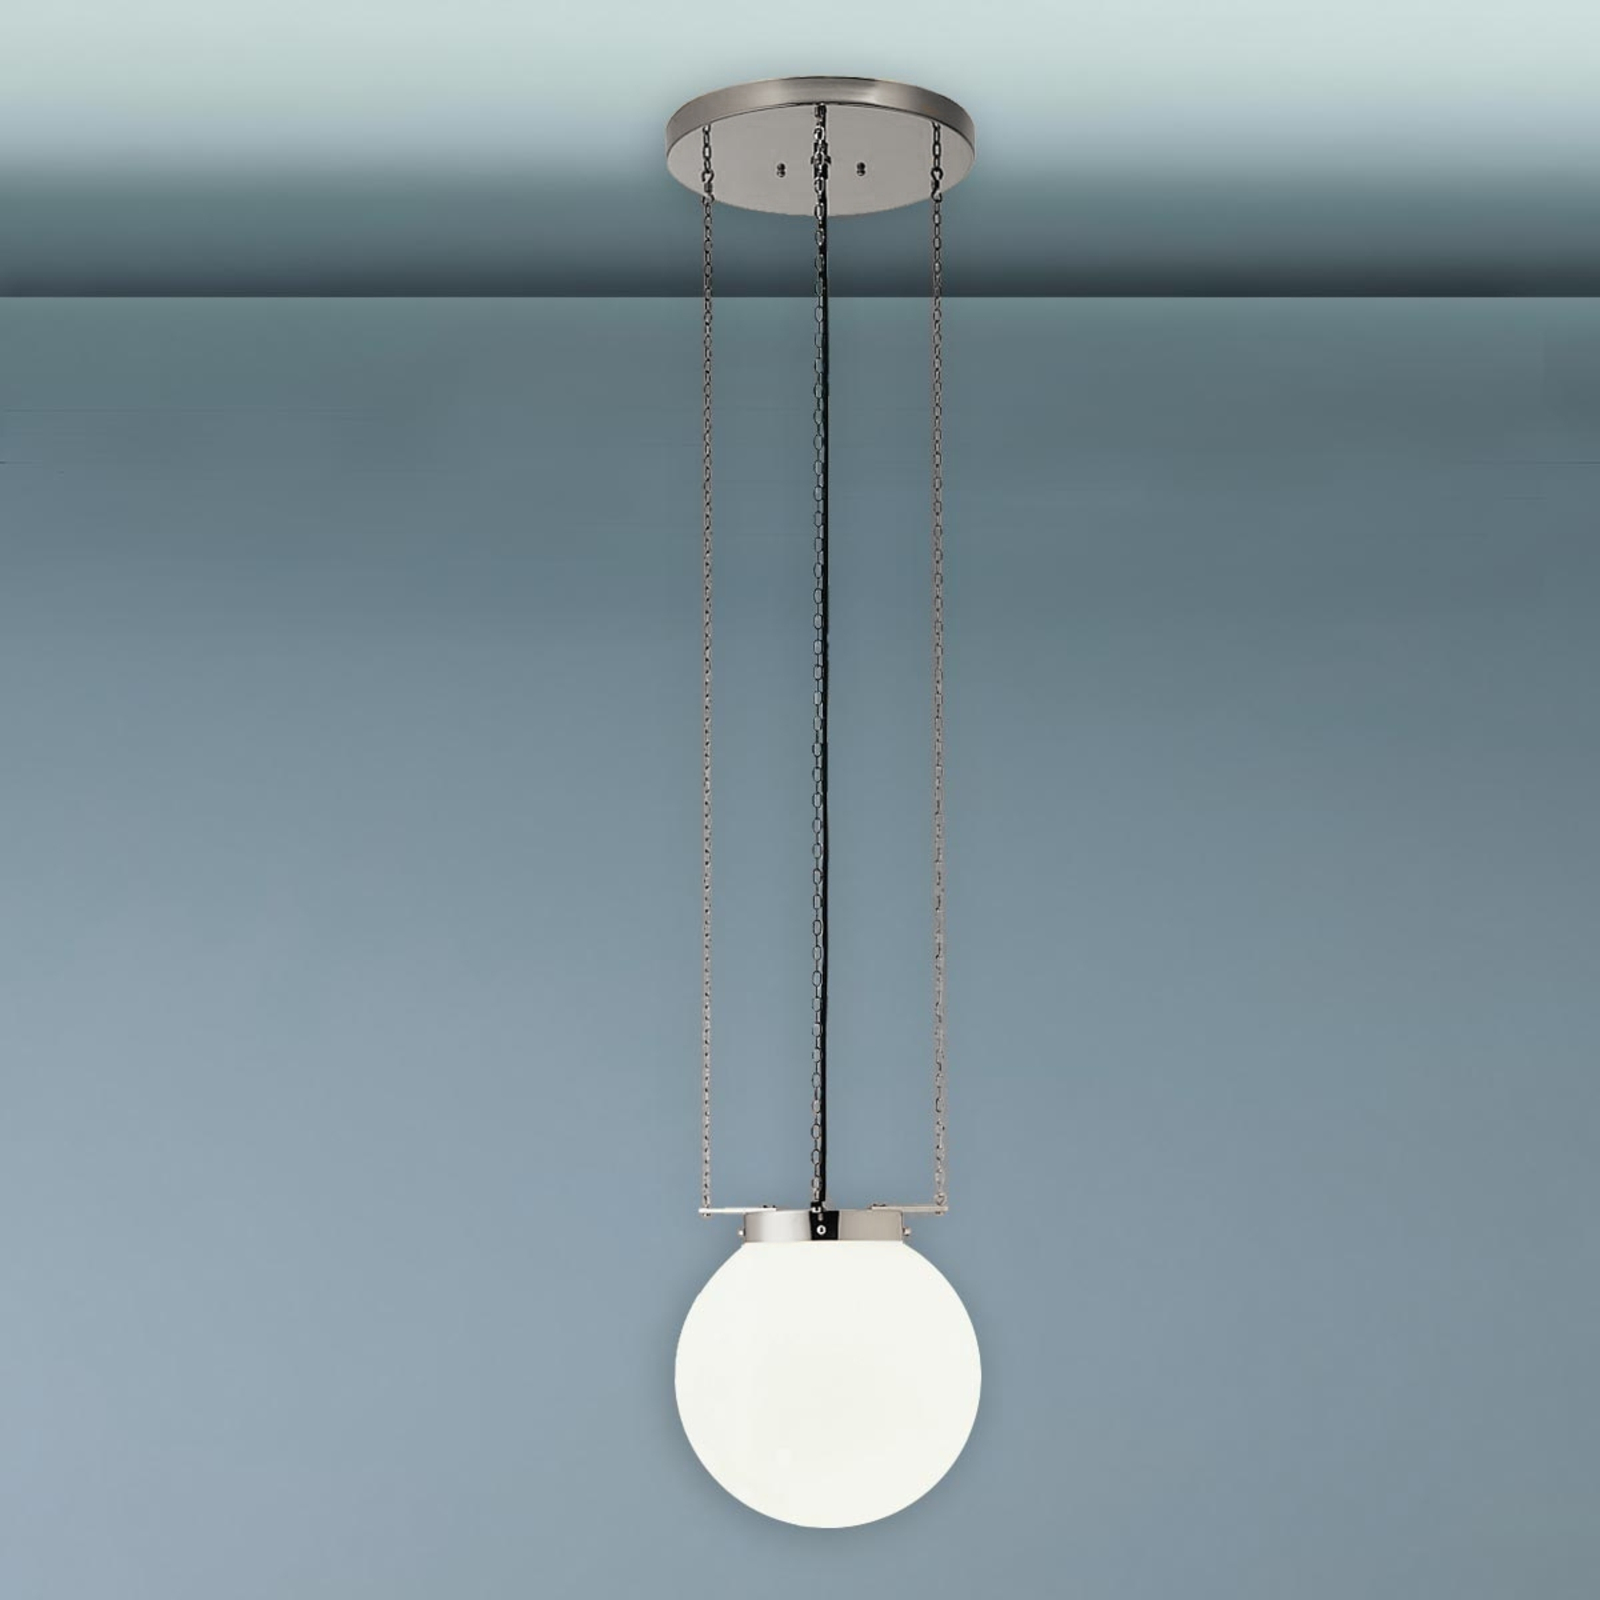 Lampa wisząca w stylu Bauhaus 25 cm nikiel